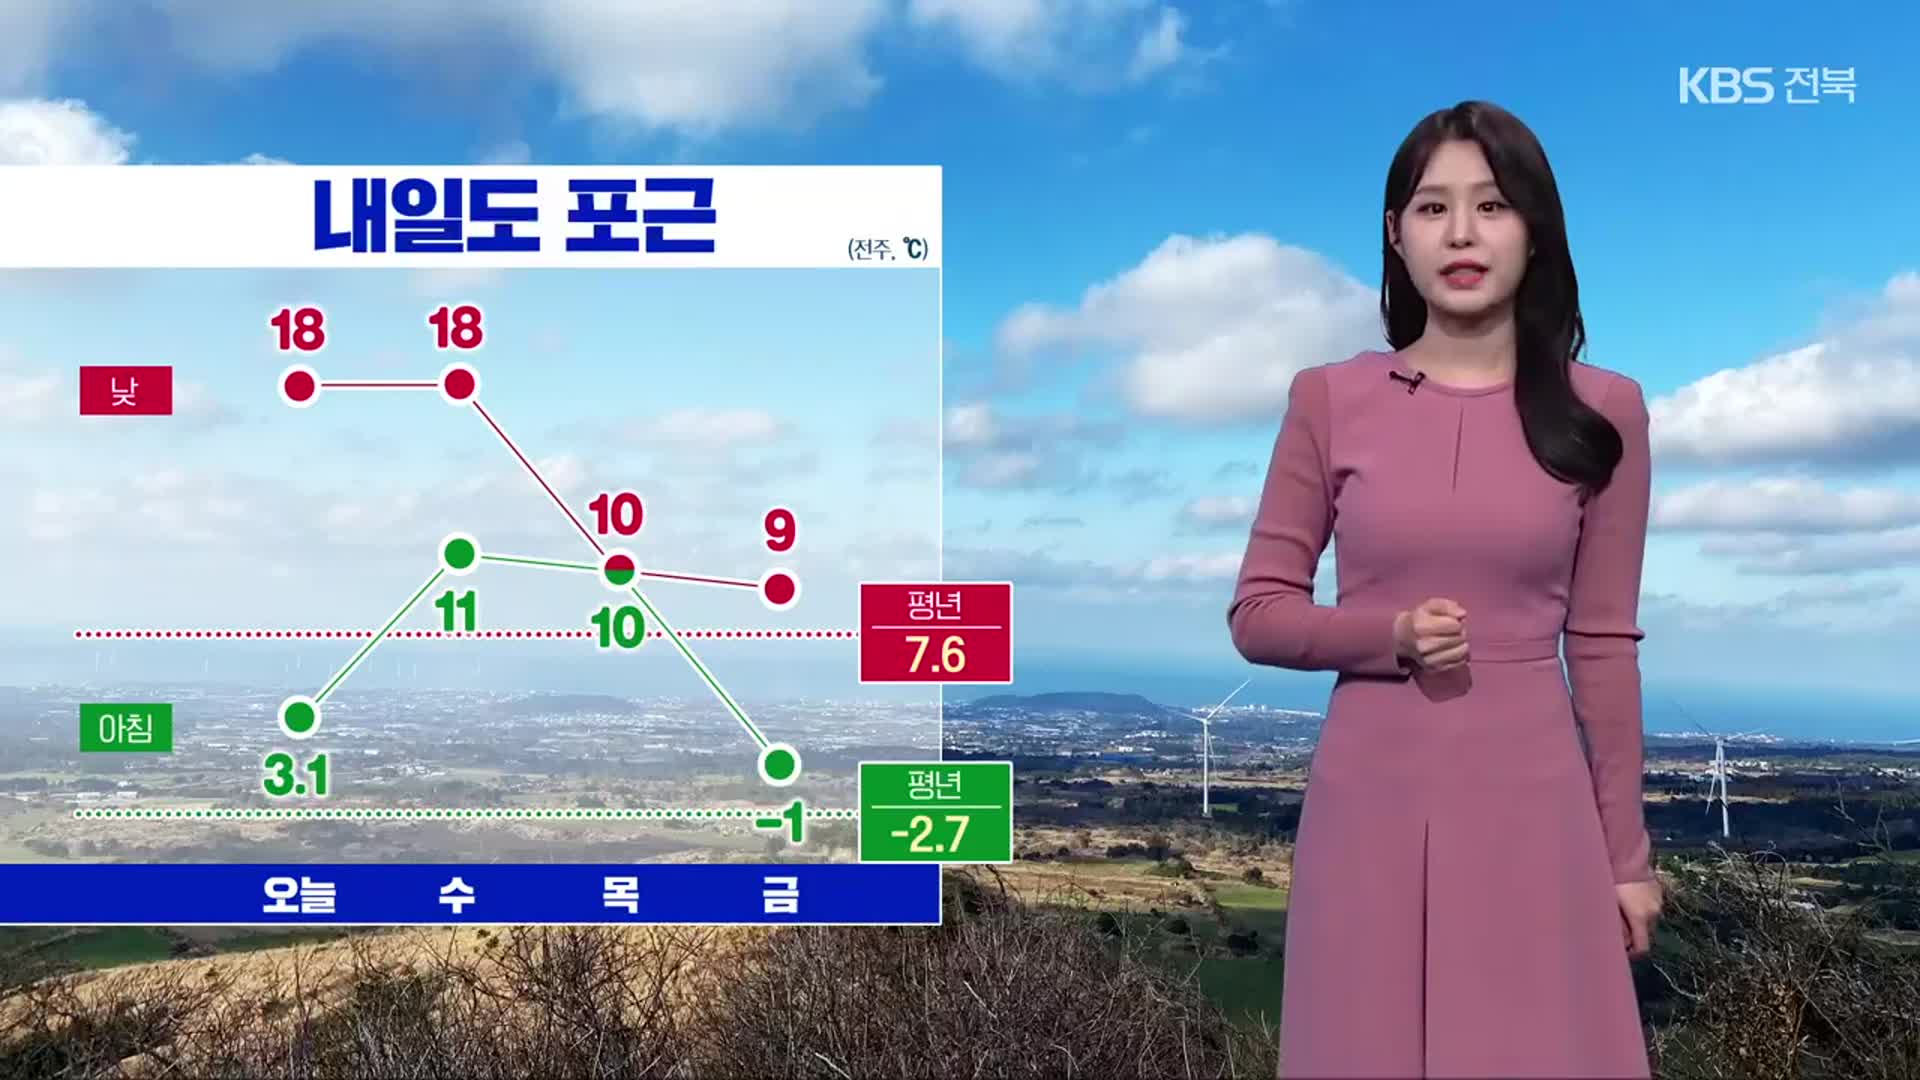 [날씨] 전북 내일 한낮 ‘18도’ 초봄 기온…내일과 모레 가끔 비